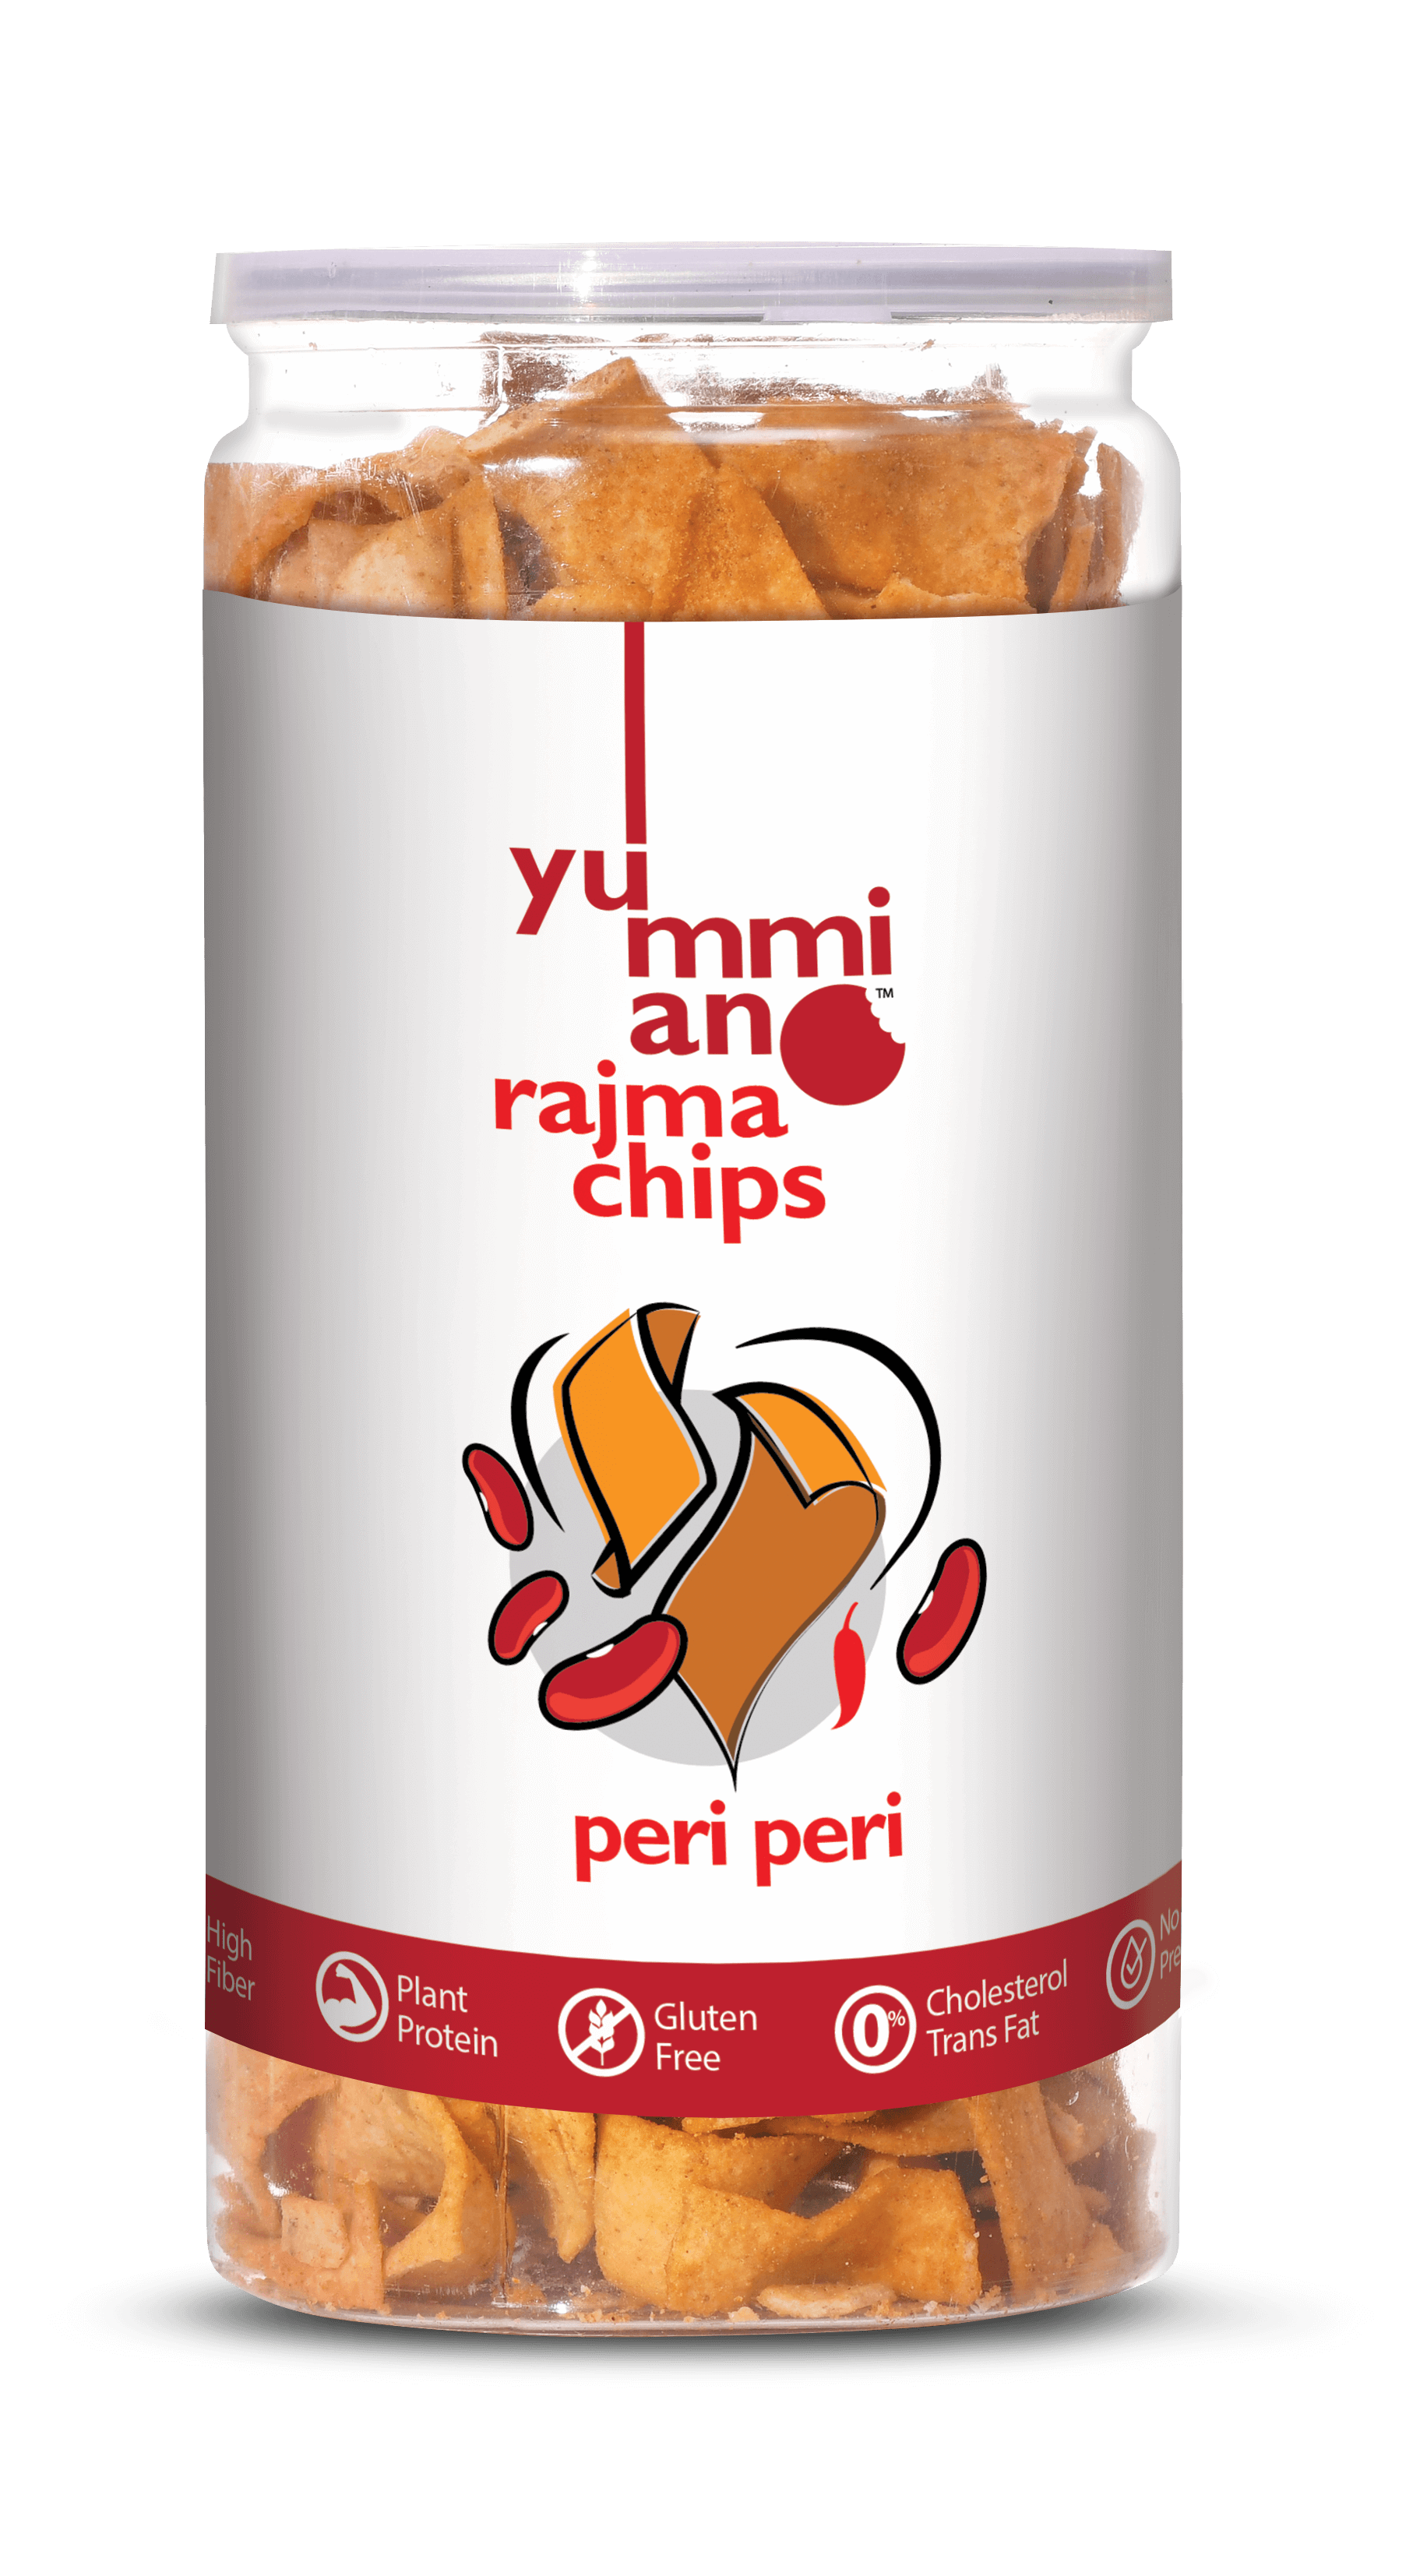 Yummiano Rajma Chips â€šÃ„Ã¶âˆšÃ‘âˆšÂ¨ Peri Peri Image